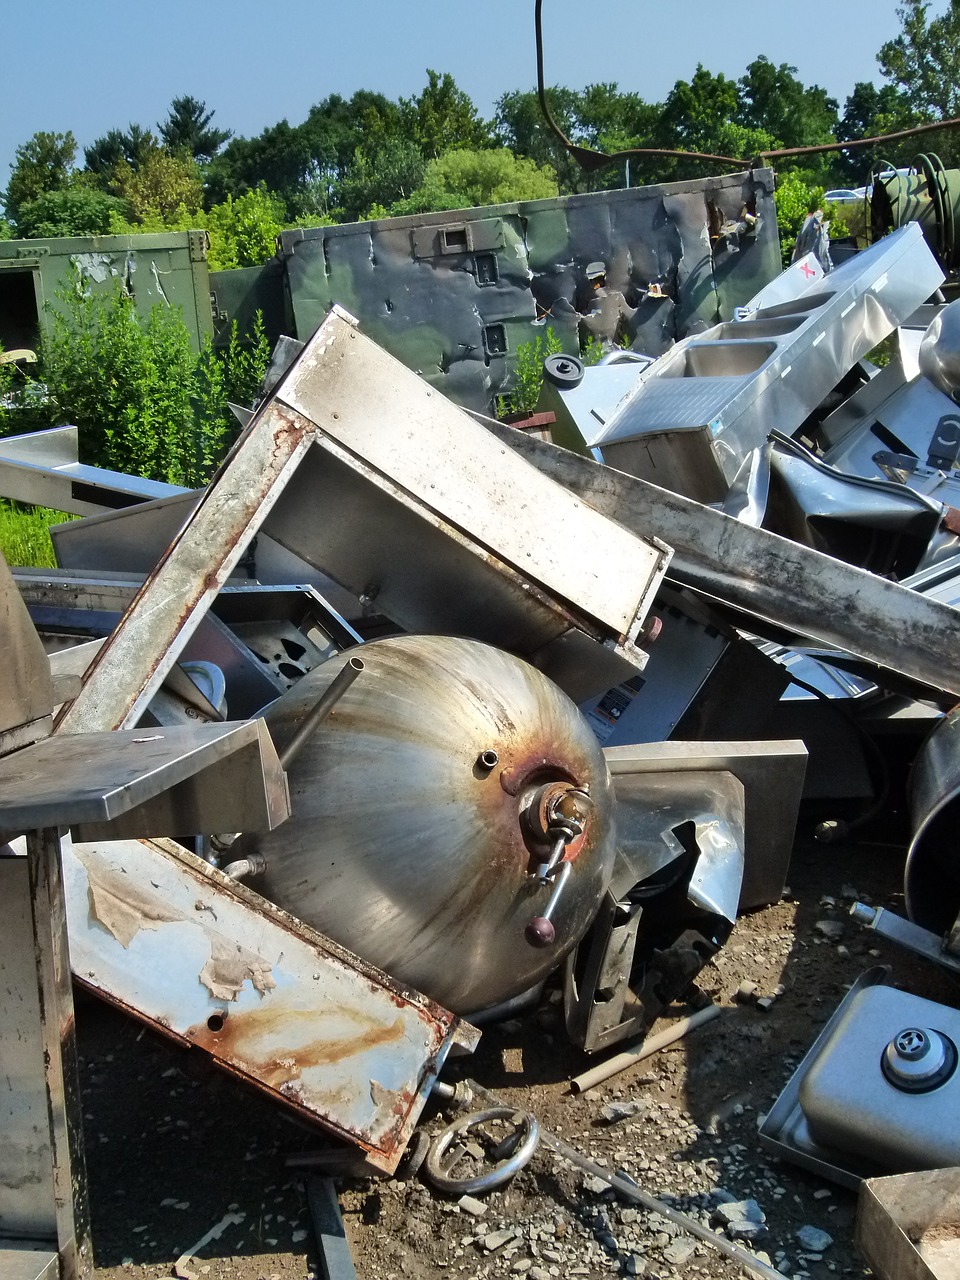 scrap metal yard metal junk free photo